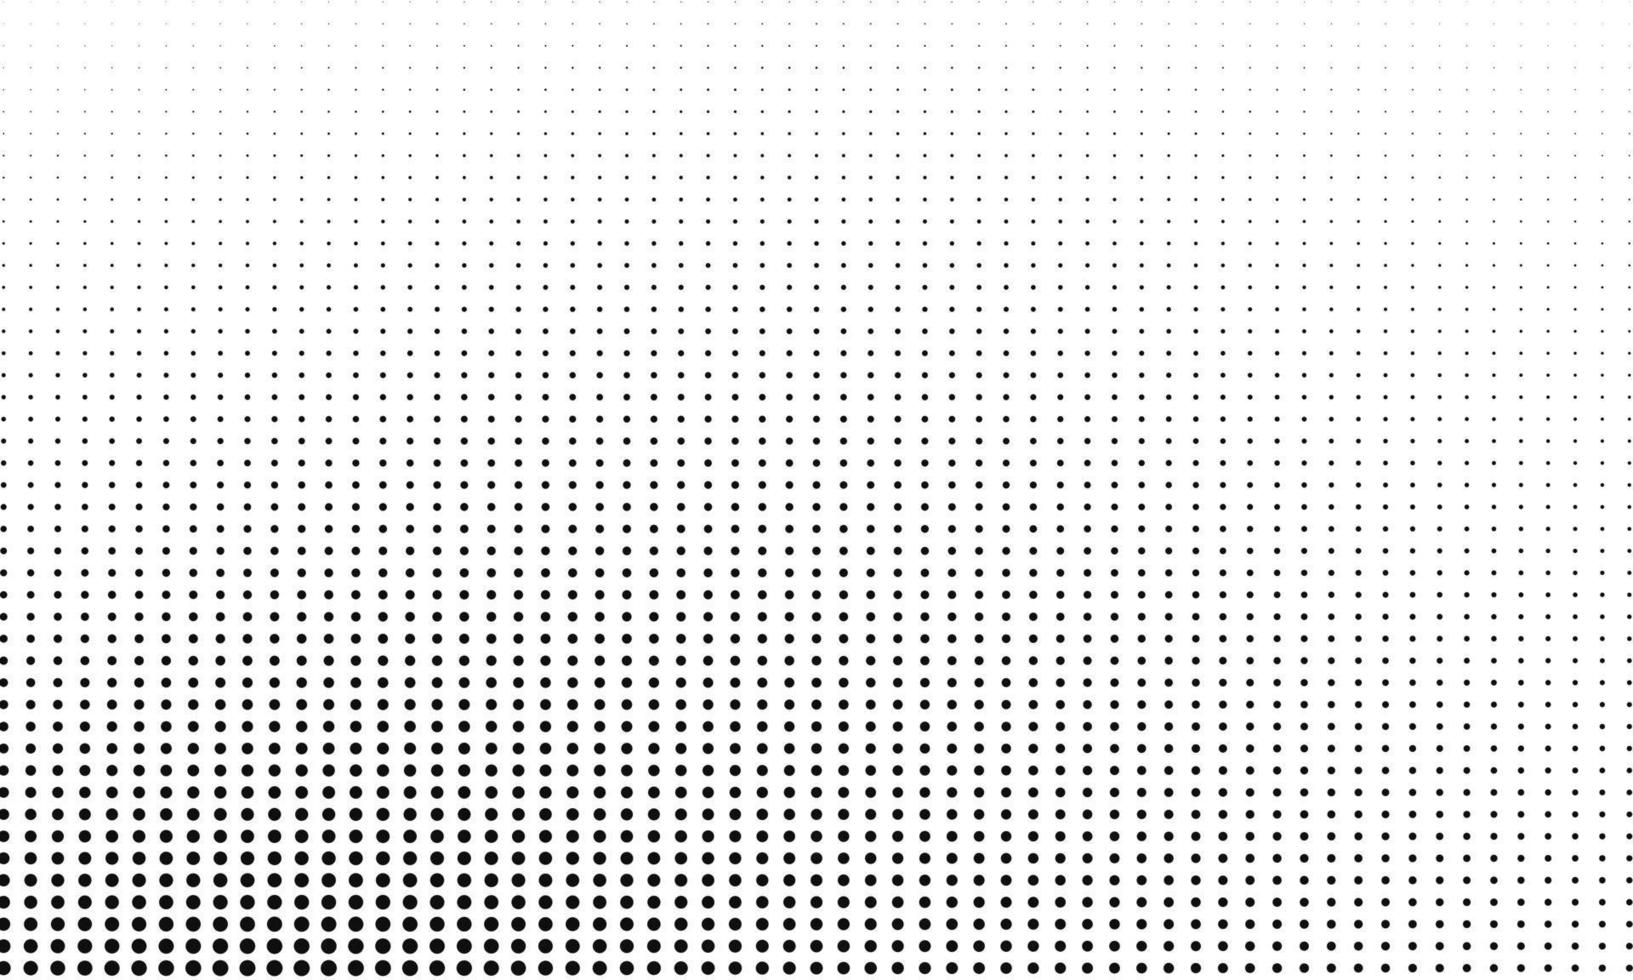 patrón de puntos pequeños en blanco y negro vector